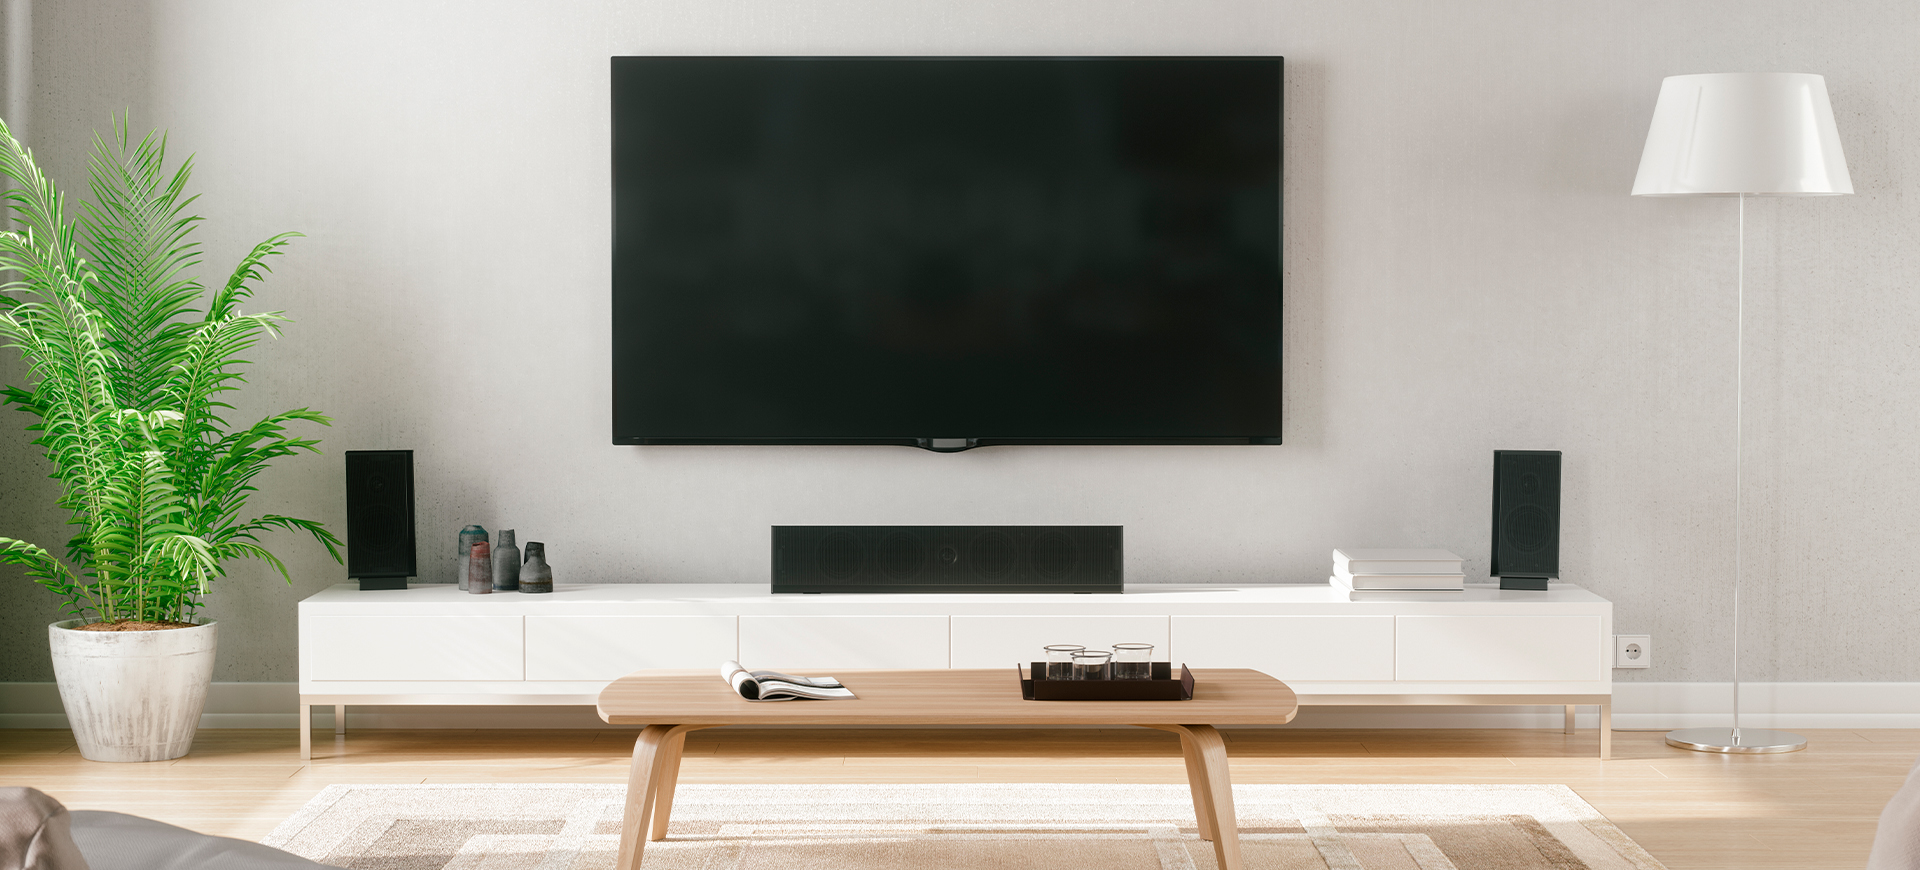 Sicht vom Sofa auf einen an der Wand hängenden Fernseher und einem Soundsystem auf einem geschlossenen, weißen Hifi-Lowboard